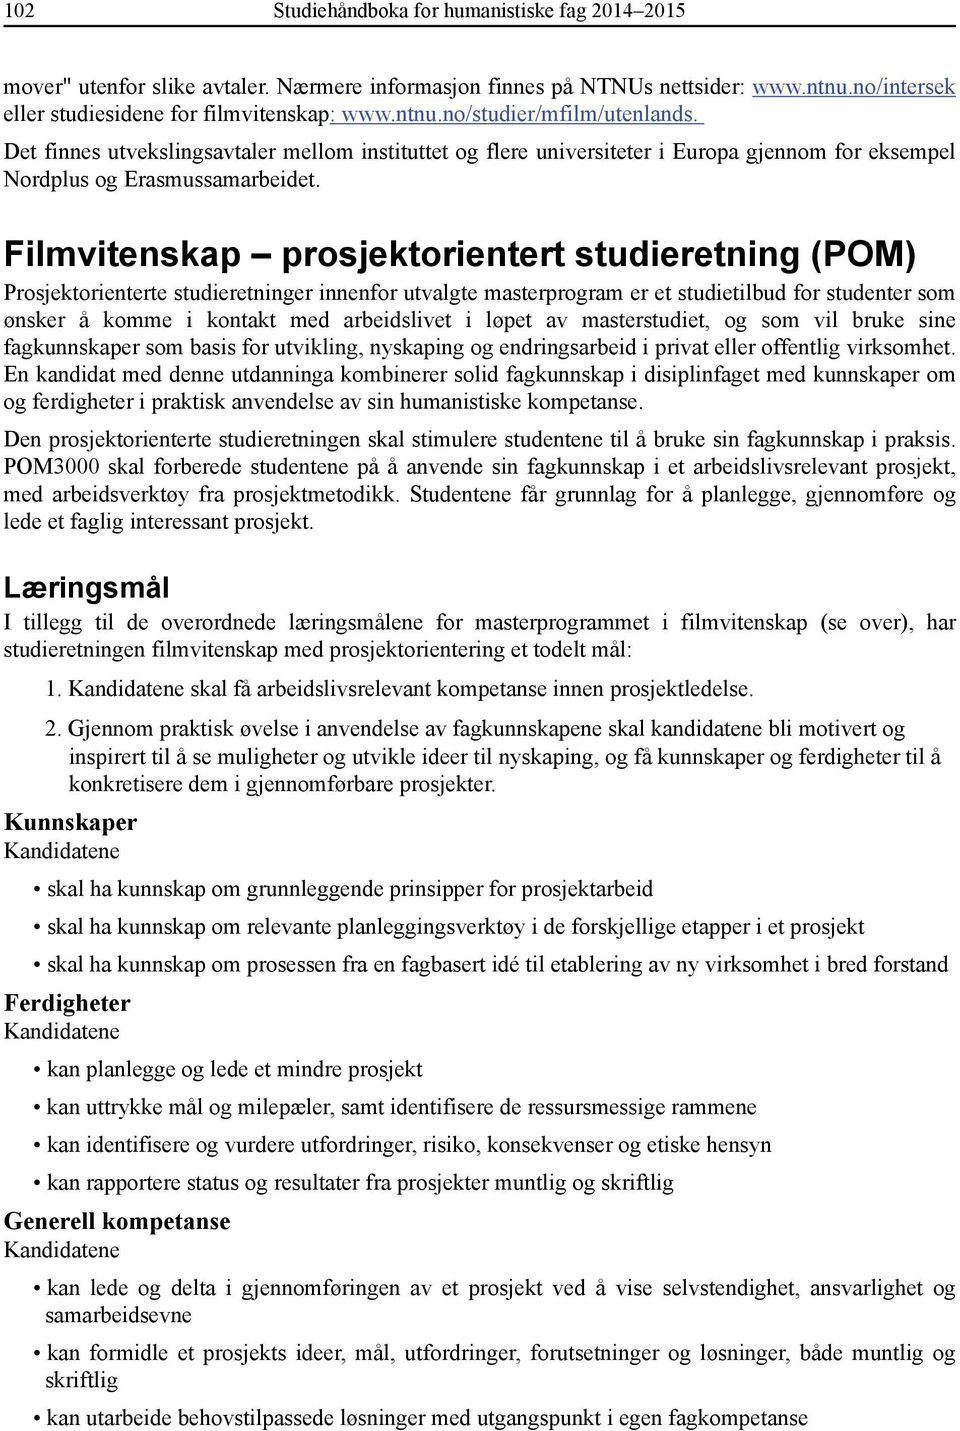 Filmvitenskap prosjektorientert studieretning (POM) Prosjektorienterte studieretninger innenfor utvalgte masterprogram er et studietilbud for studenter som ønsker å komme i kontakt med arbeidslivet i